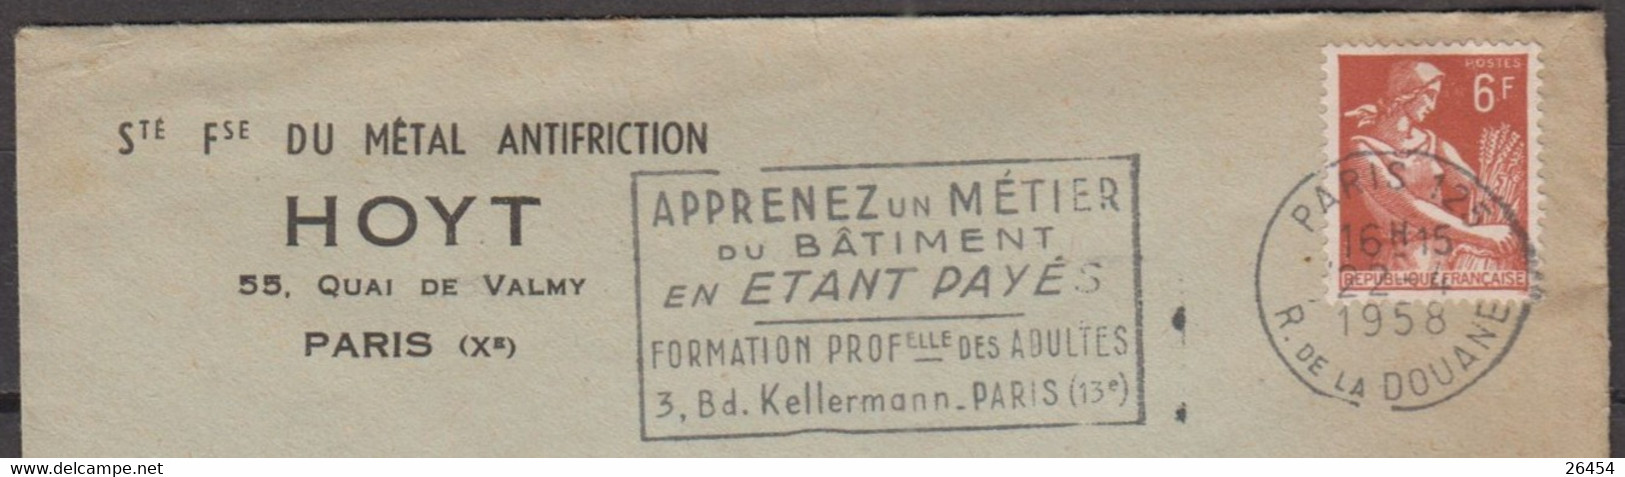 Moissonneuse  6F Sur Enveloppe Pub " Sté Fse Du METAL ANTIFRICTION " De PARIS X Le 22 4 1958 Avec Sécap De PARIS 125 - 1957-1959 Reaper